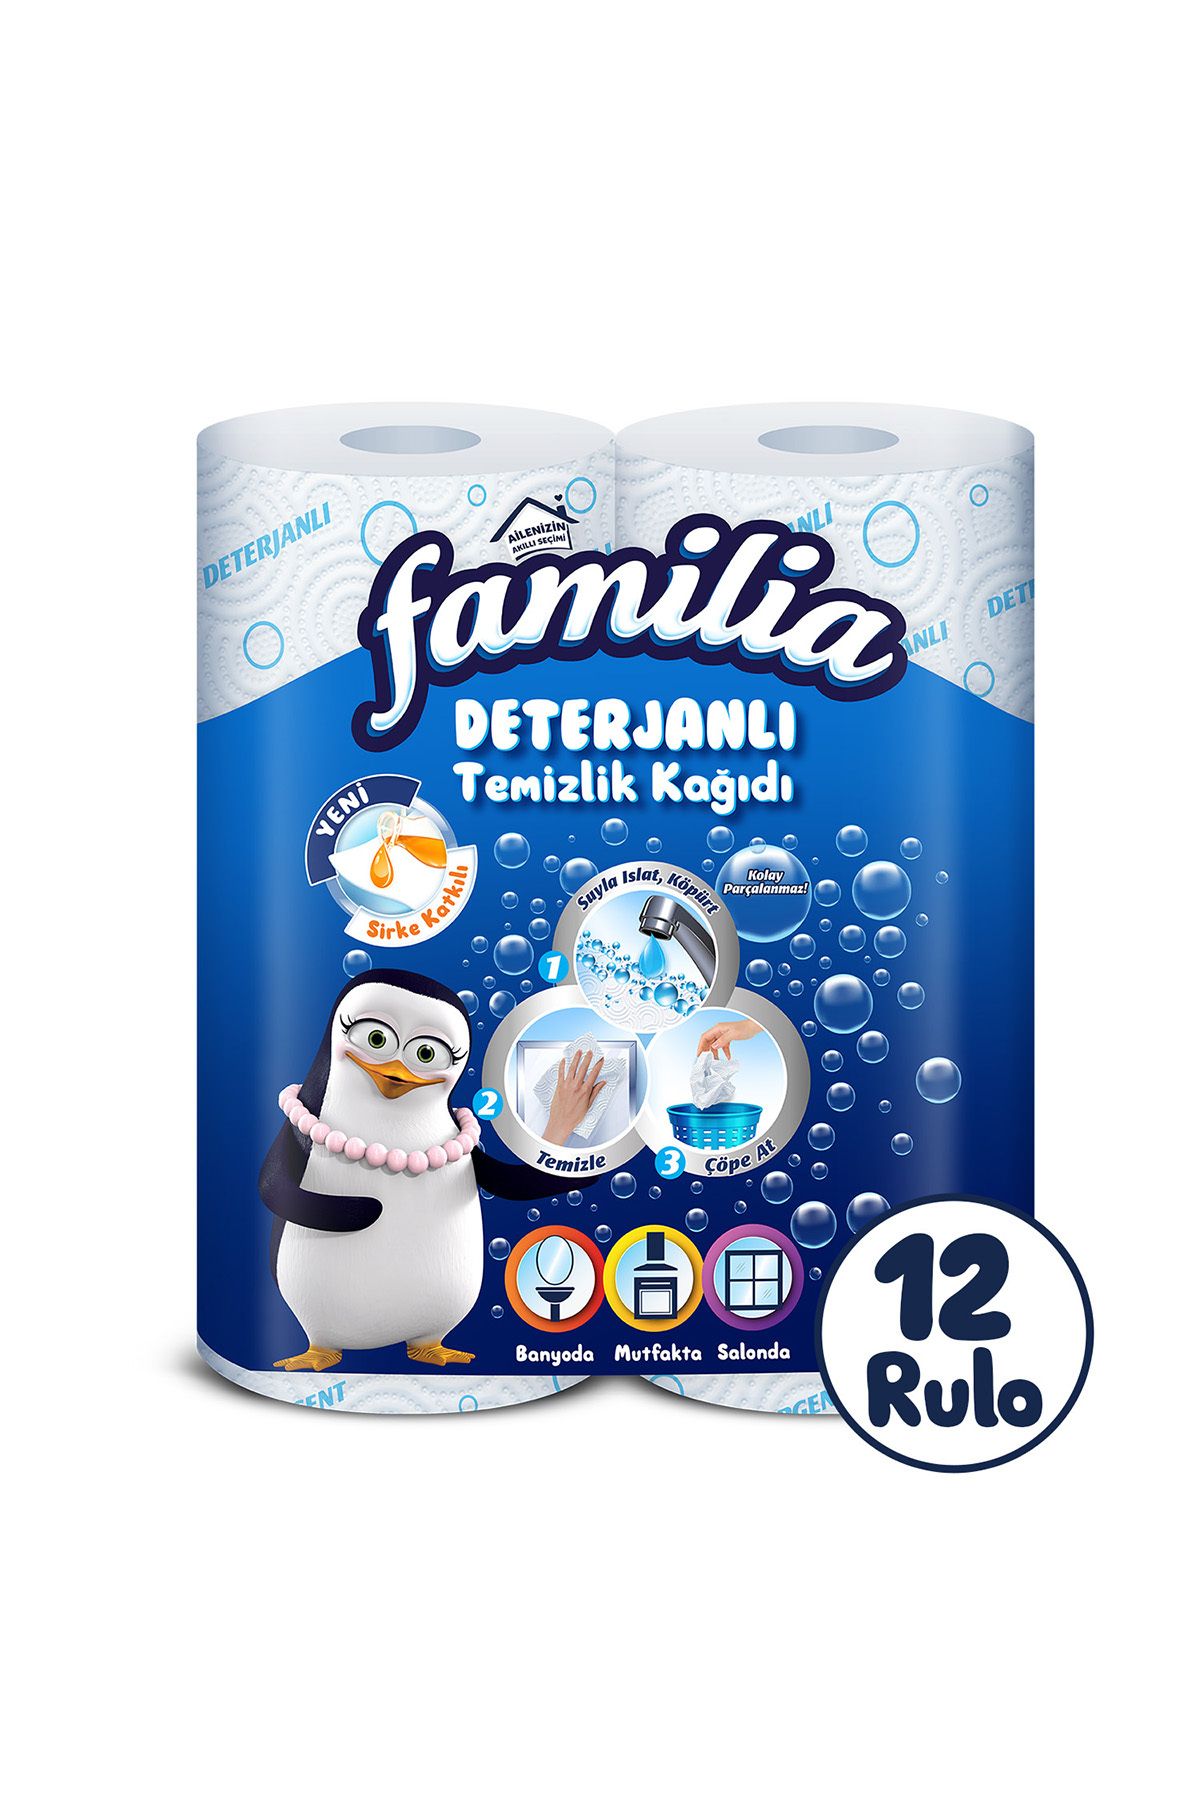 Familia Deterjanlı Temizlik Kağıdı 12 Rulo (2 RULO X 6 PAKET)